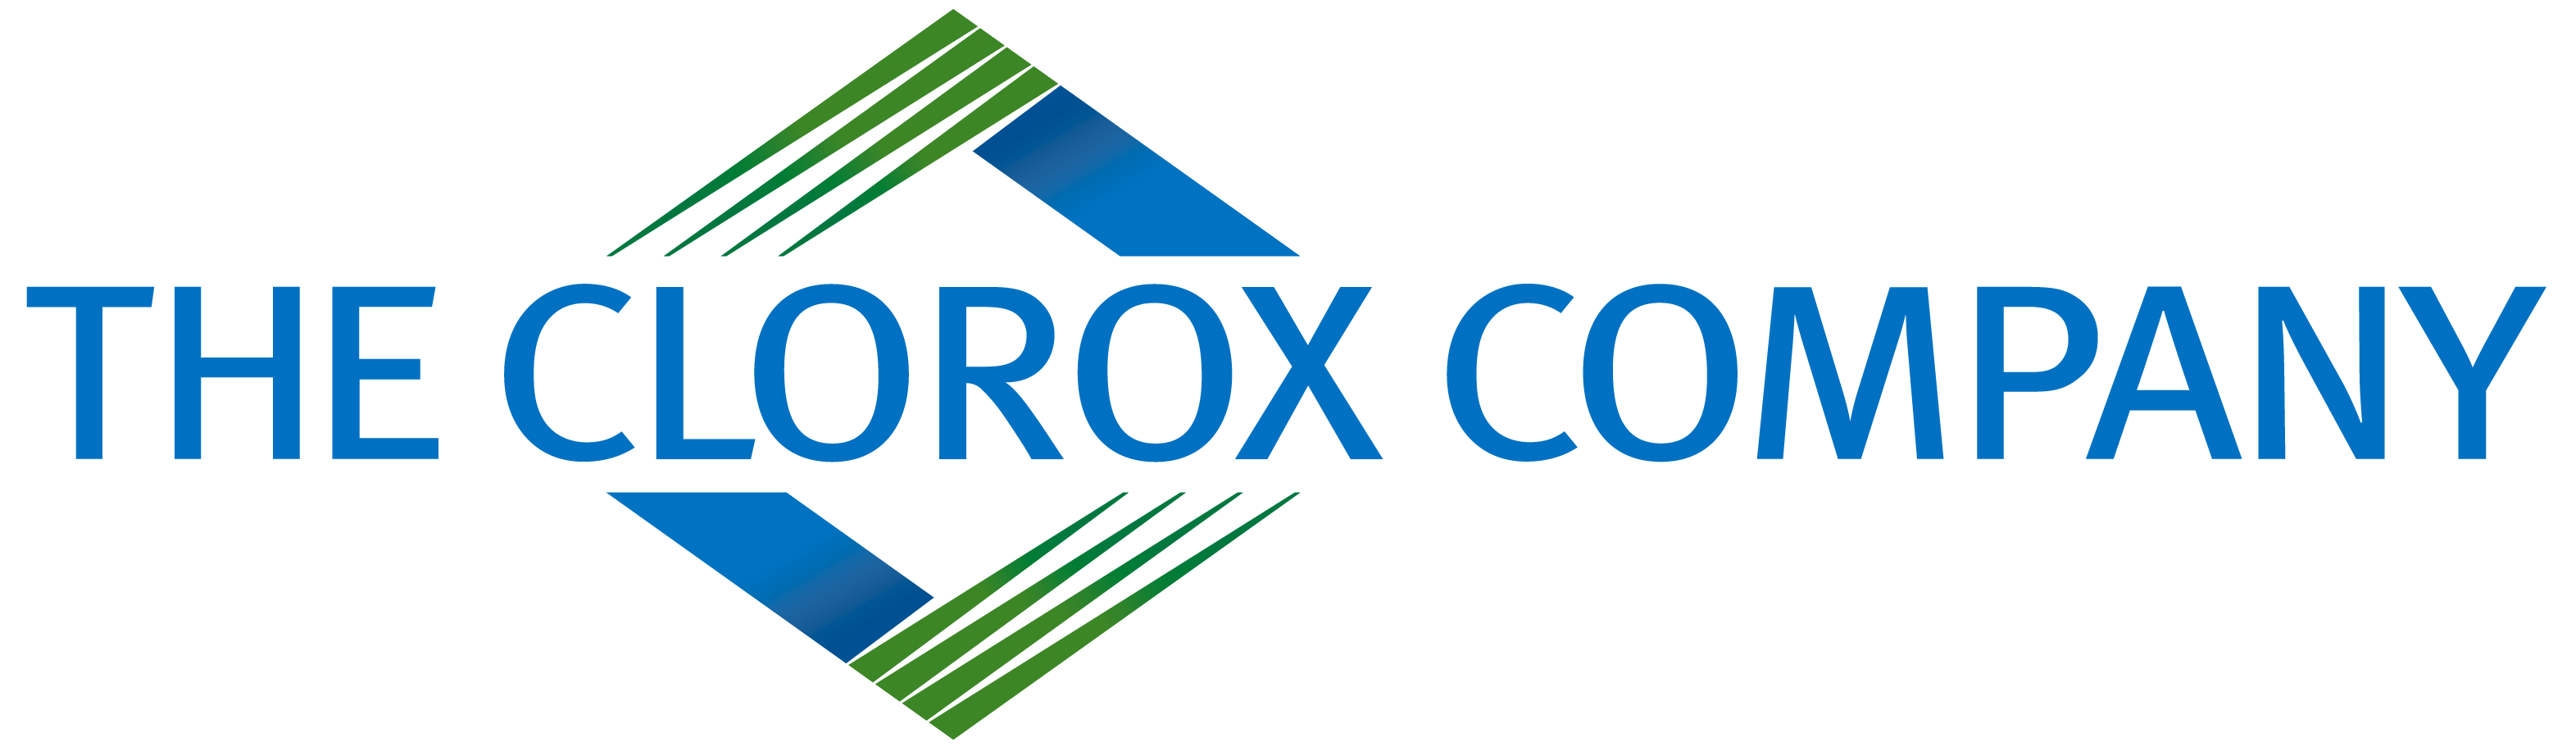 Clorox Company Vector Logo Wallpaper